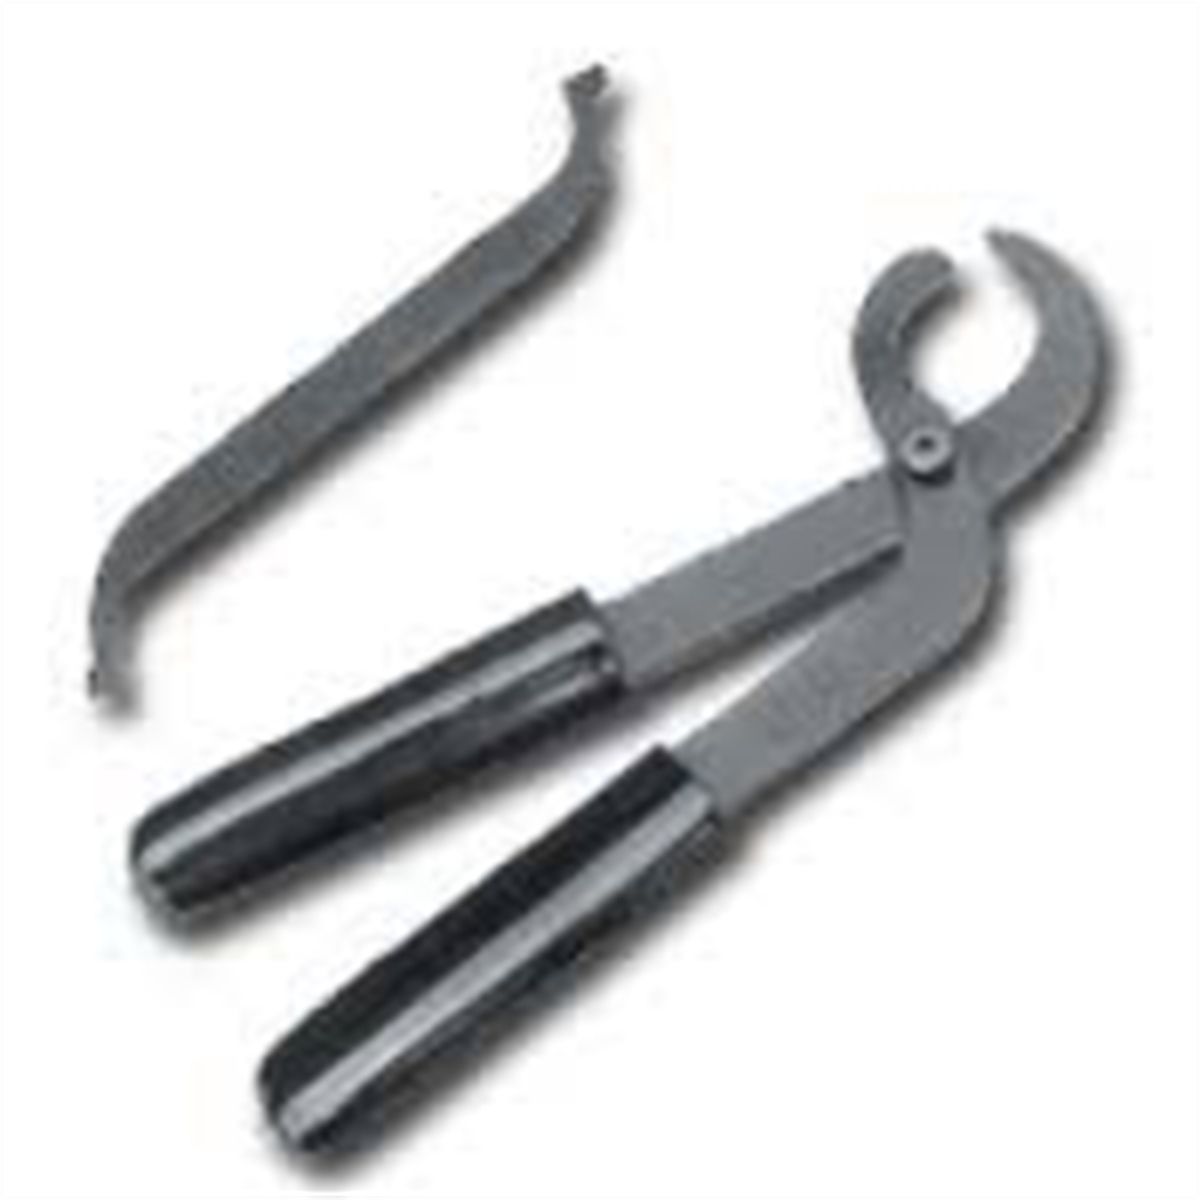 CAMSHAFT Seal Installer Tool KIT for Mazda, Nissan, Toyota,Lexus JTC 4774